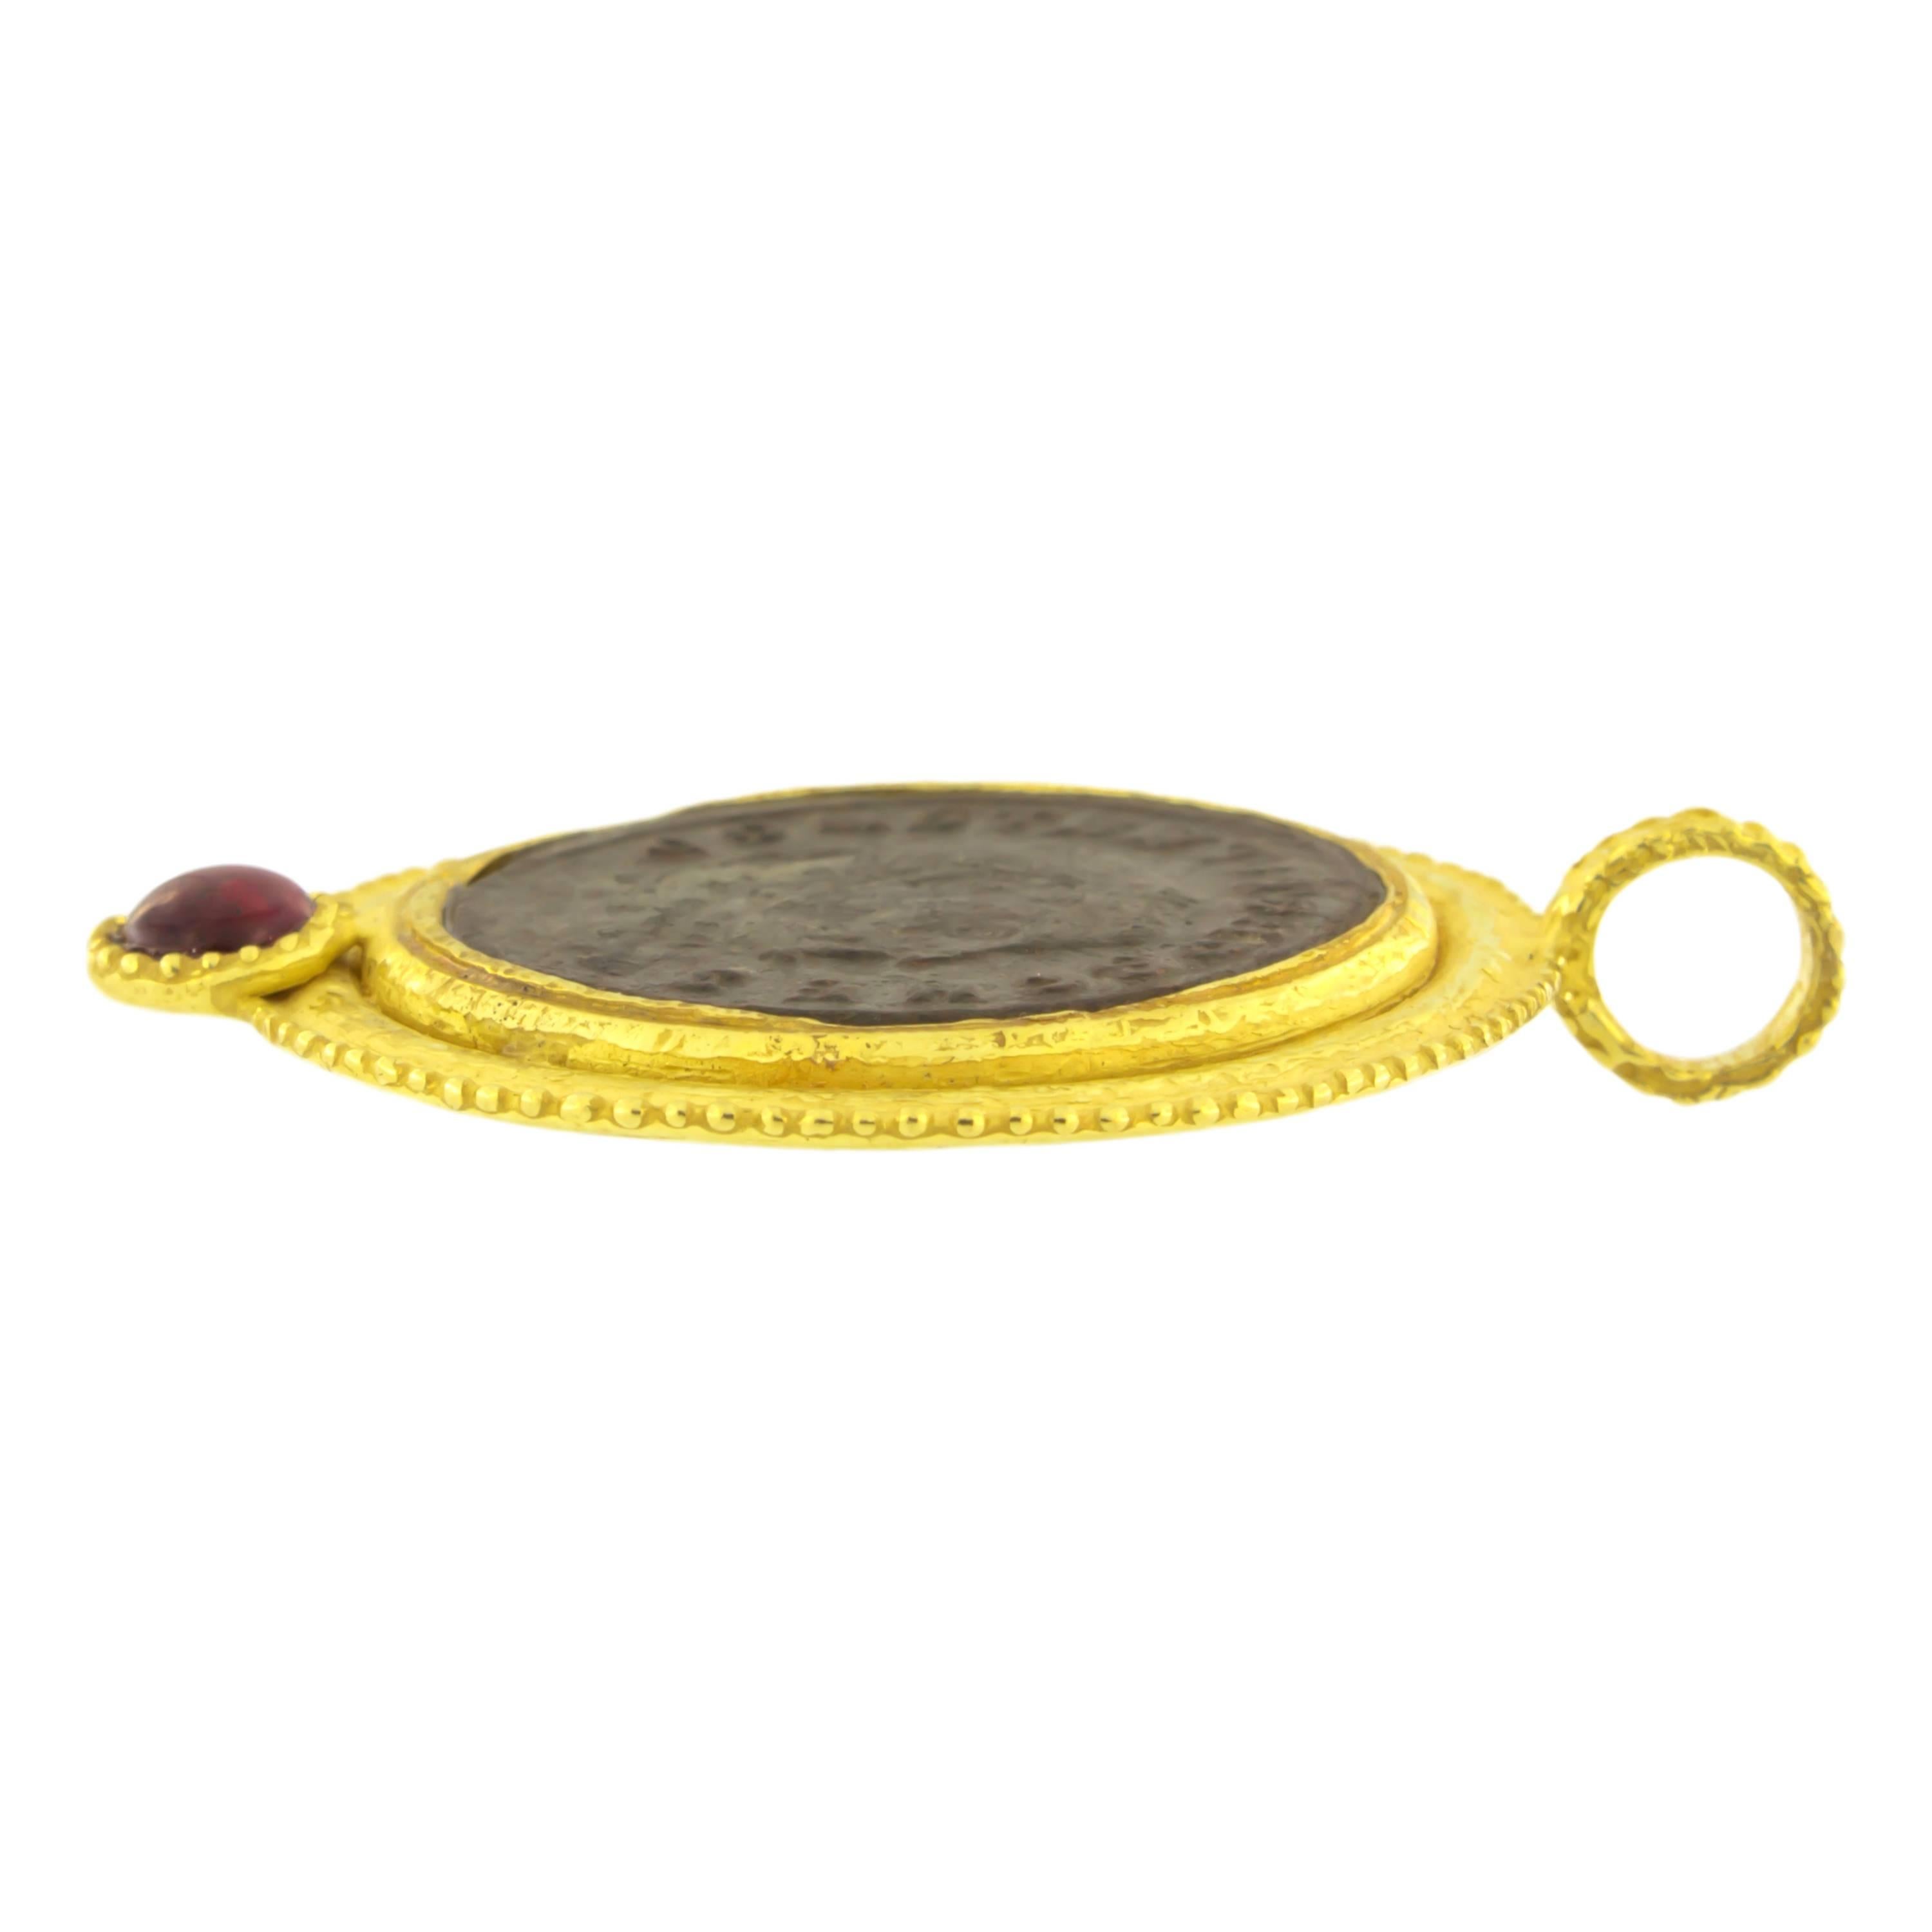 Pendentif en or jaune satiné avec pièce de monnaie de l'Antiquité romaine et tourmaline, de la Collection Roma de Sacchi, réalisé à la main selon la technique de la fonte à la cire perdue.

La fonte à la cire perdue, l'une des plus anciennes